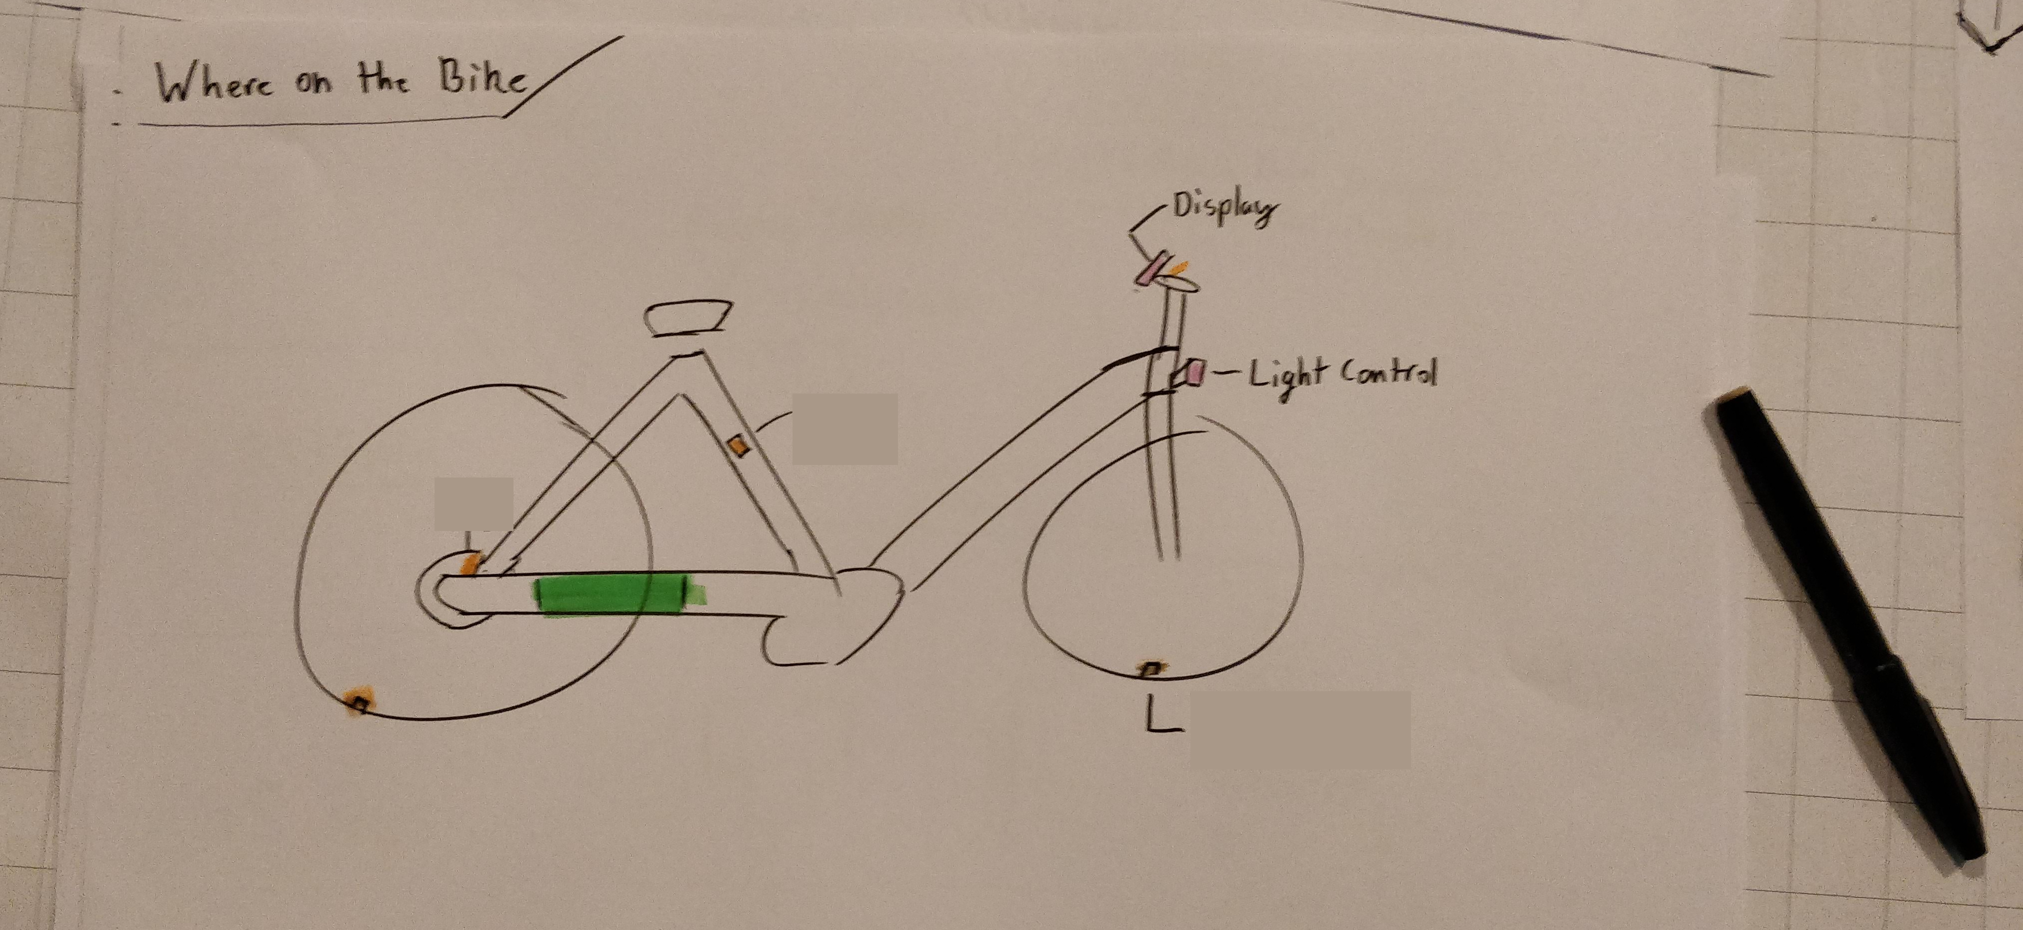 A bad sketch of the bike